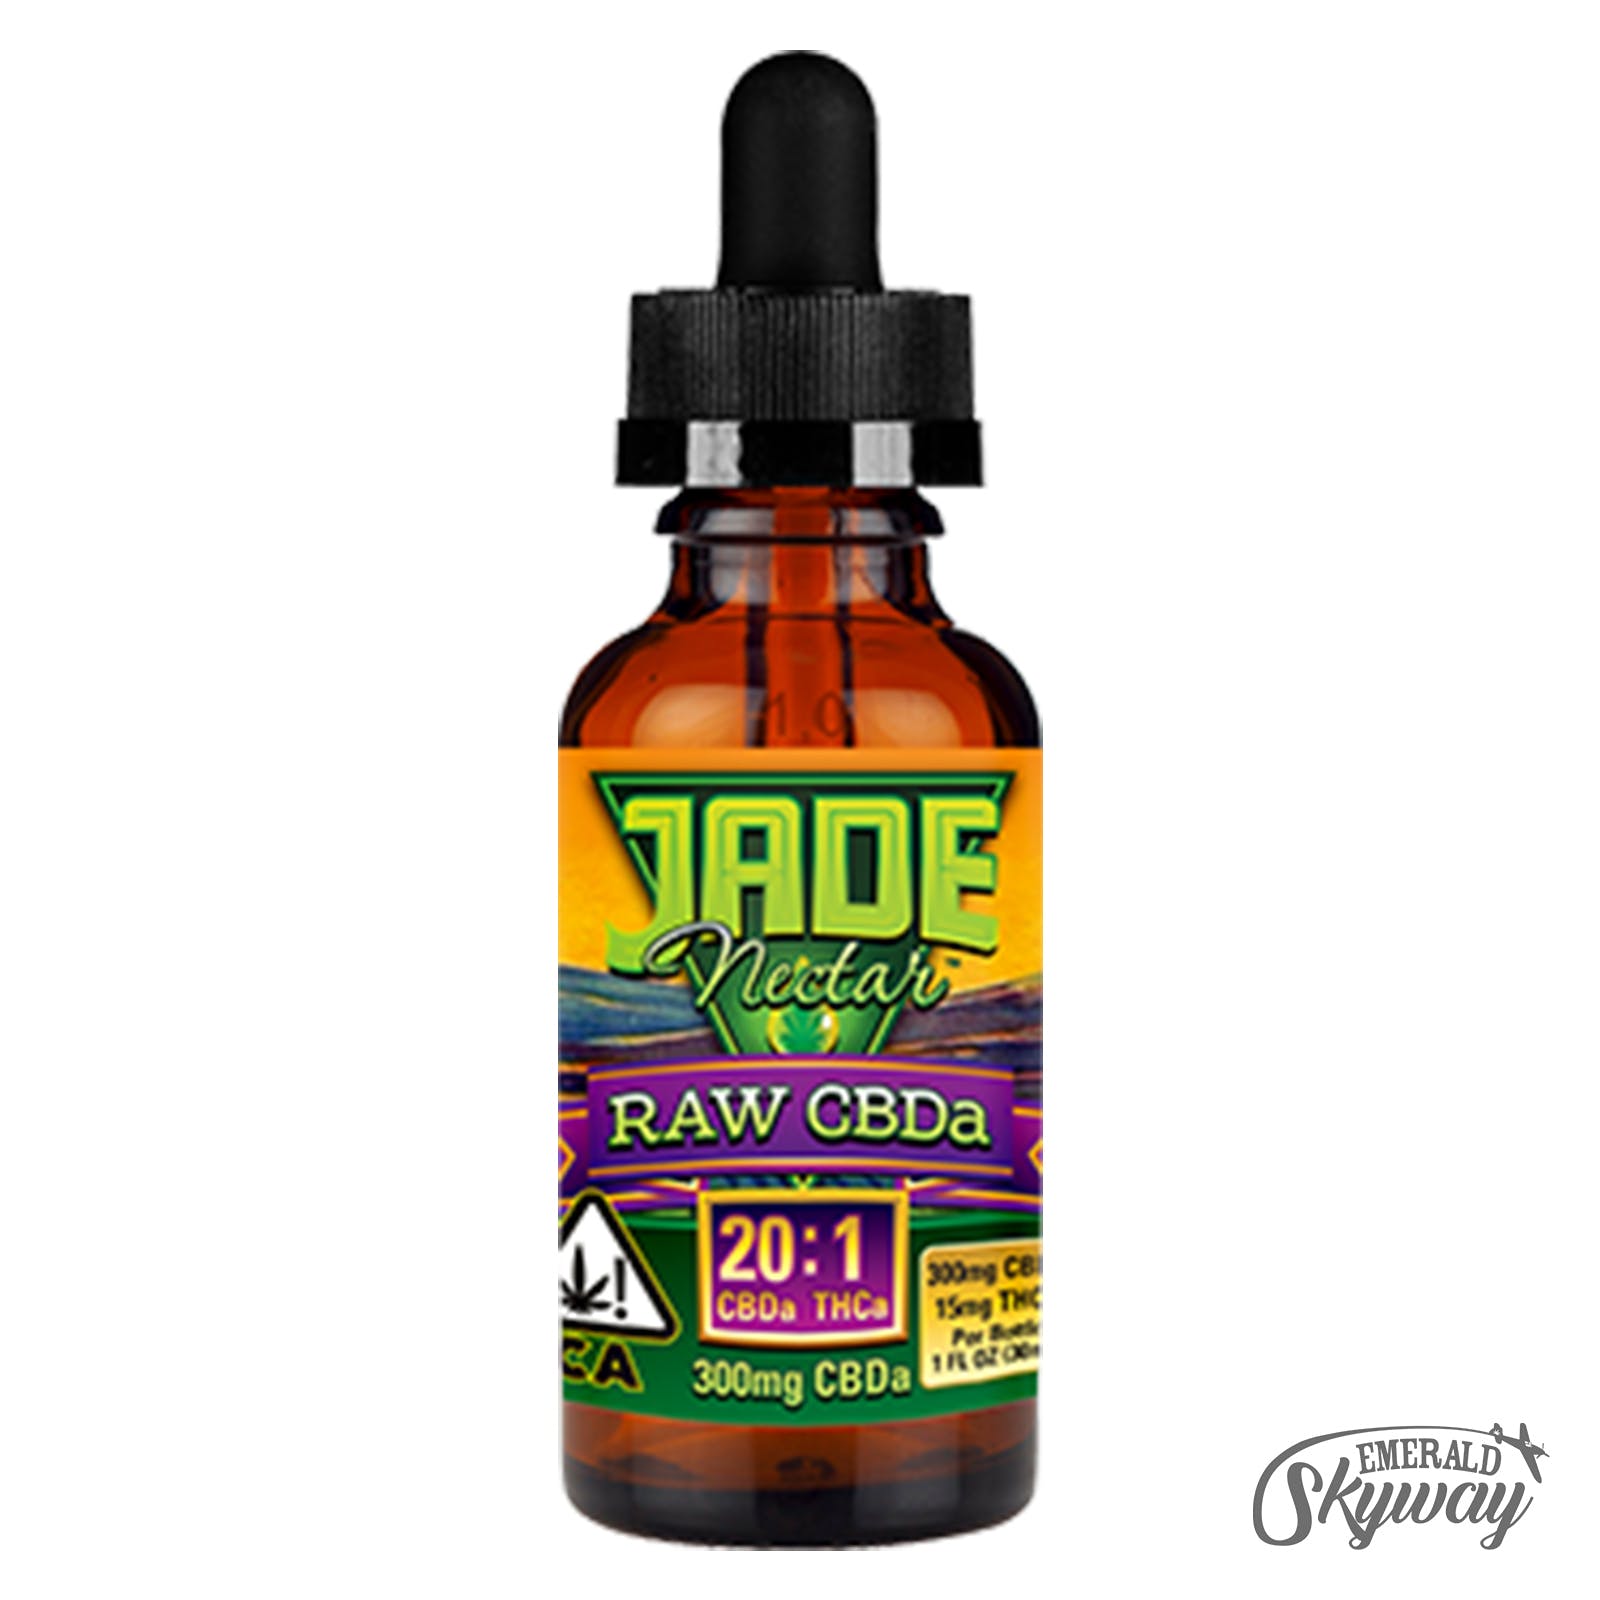 Jade Nectar: Raw CBDa